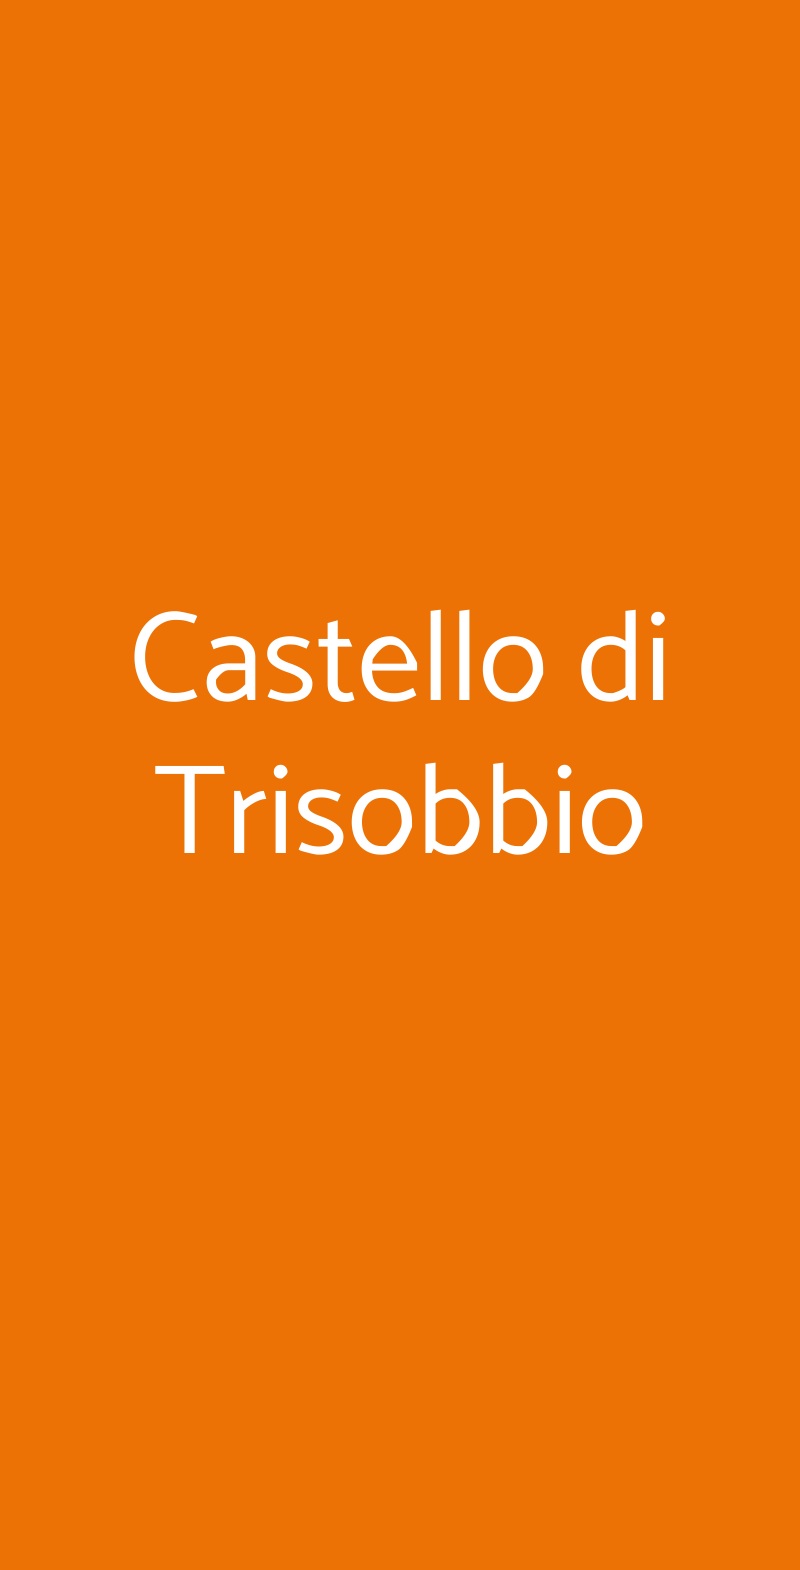 Castello di Trisobbio Trisobbio menù 1 pagina